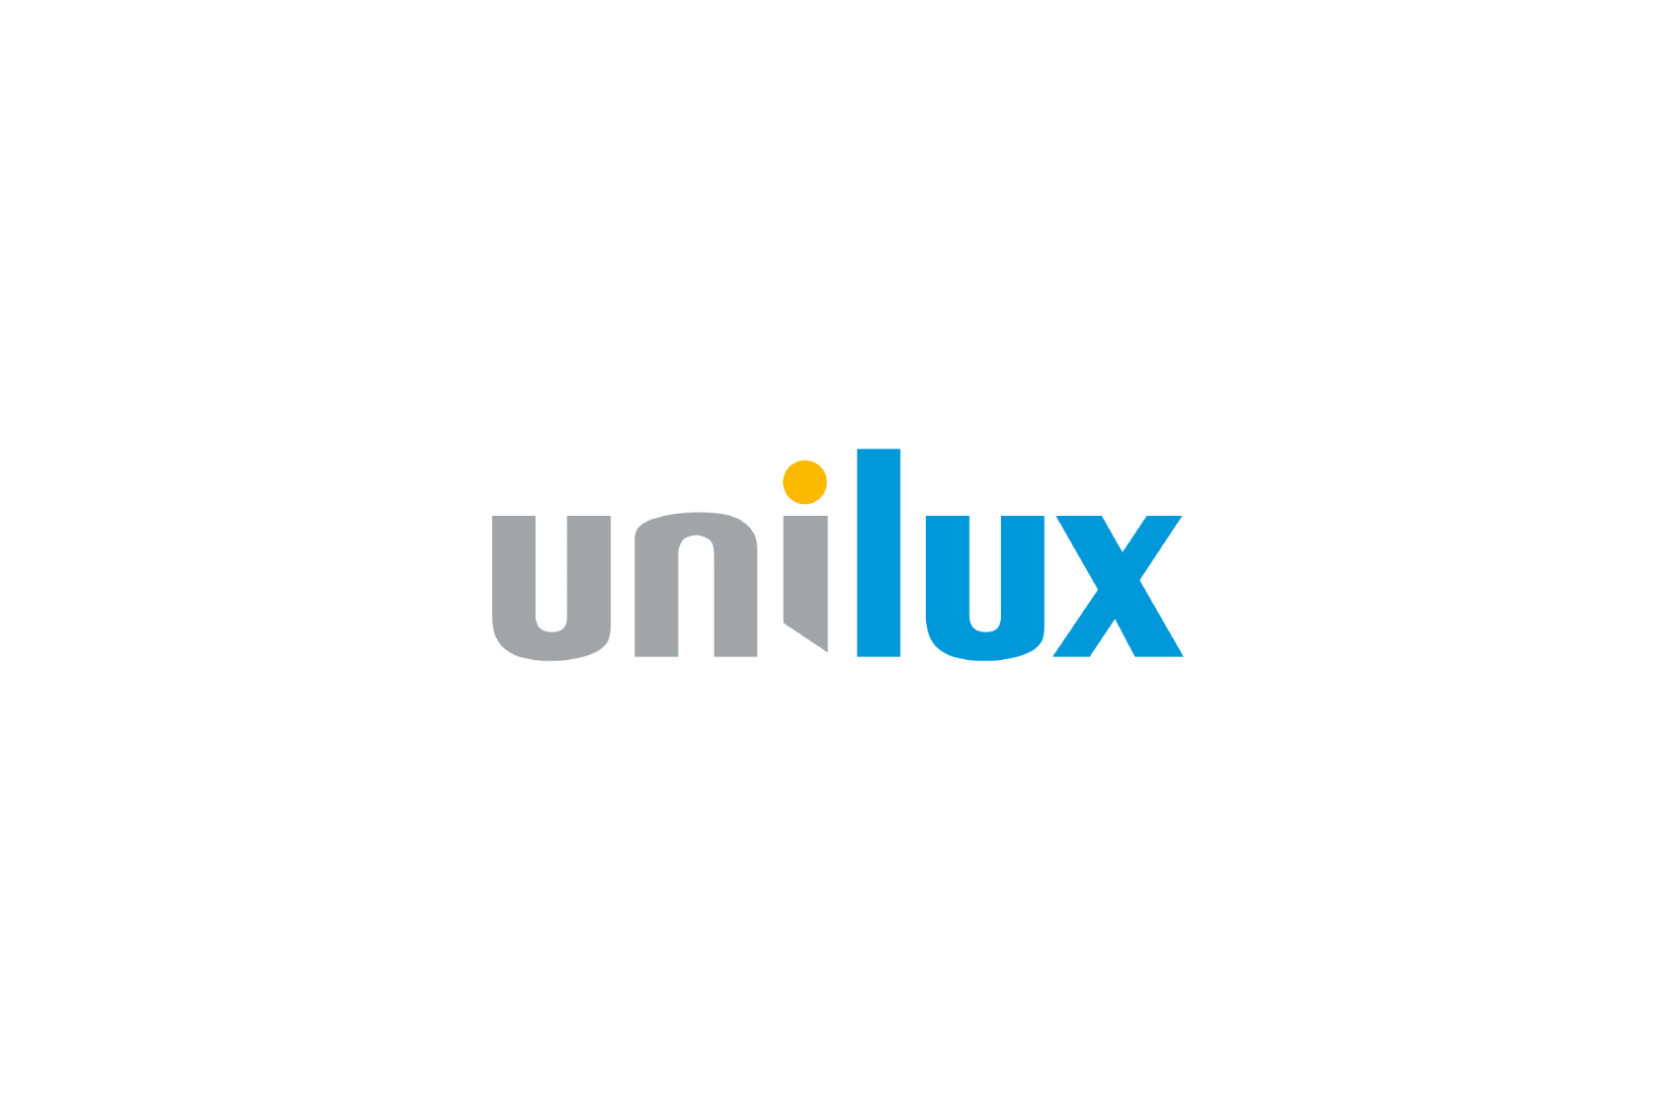 Unilux logo